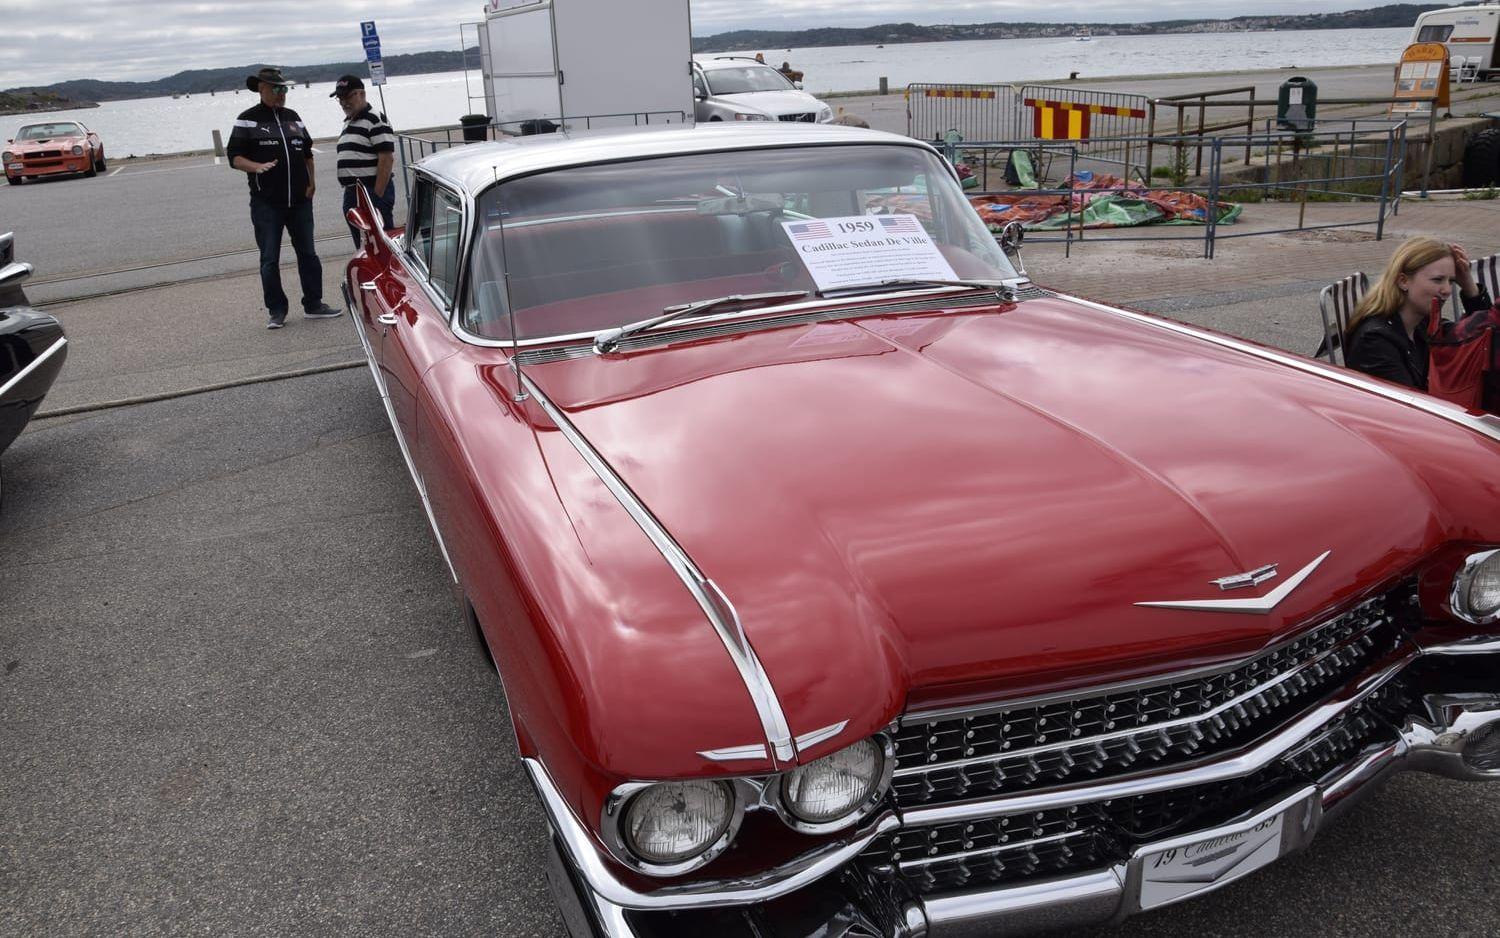 Den här bilen, en Cadillac, tillverkades 1959.